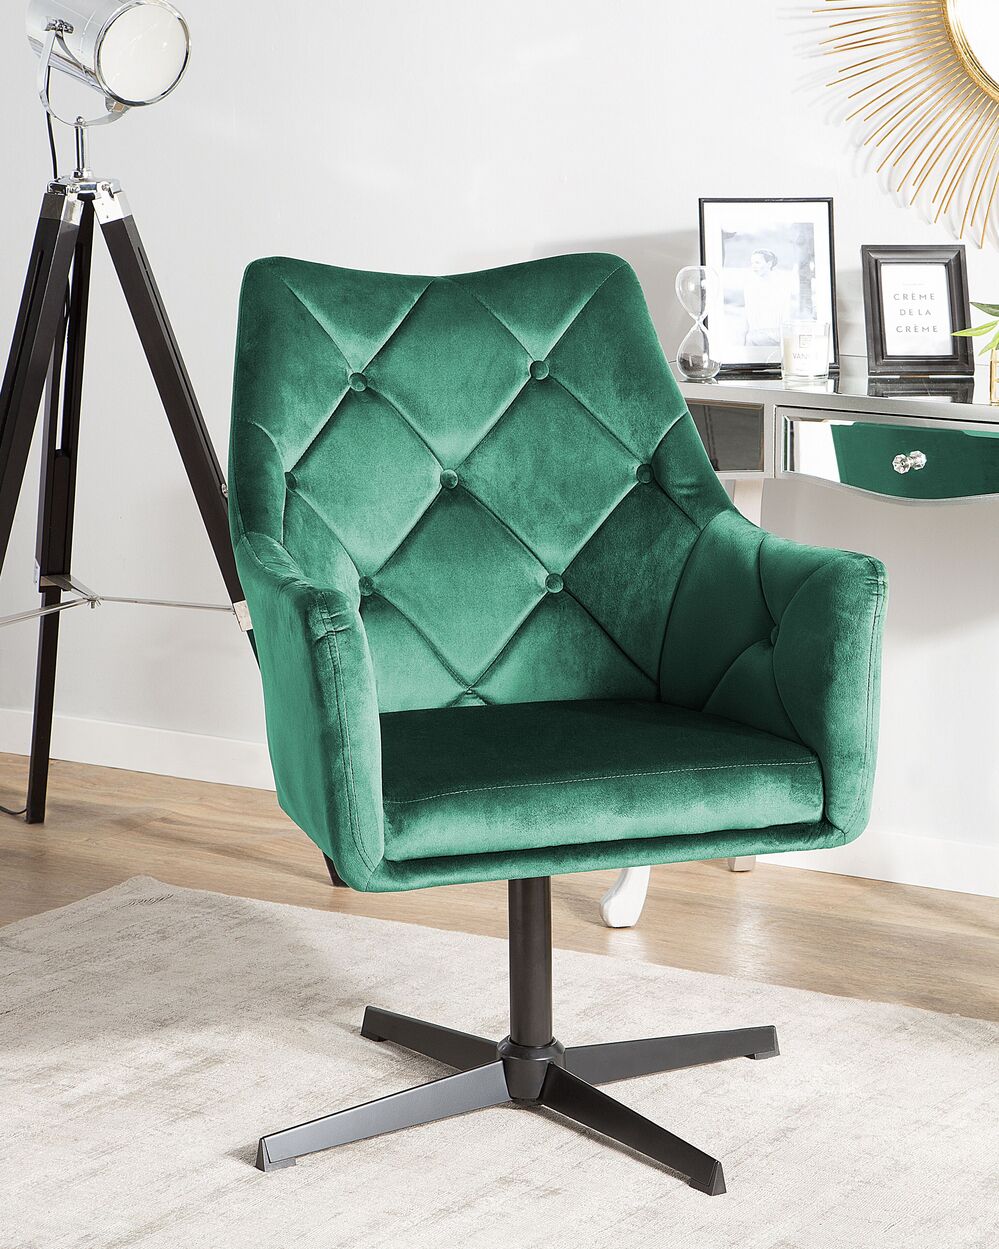 Un fauteuil en tissu vert foncé pour un confort inégalable - So Inside